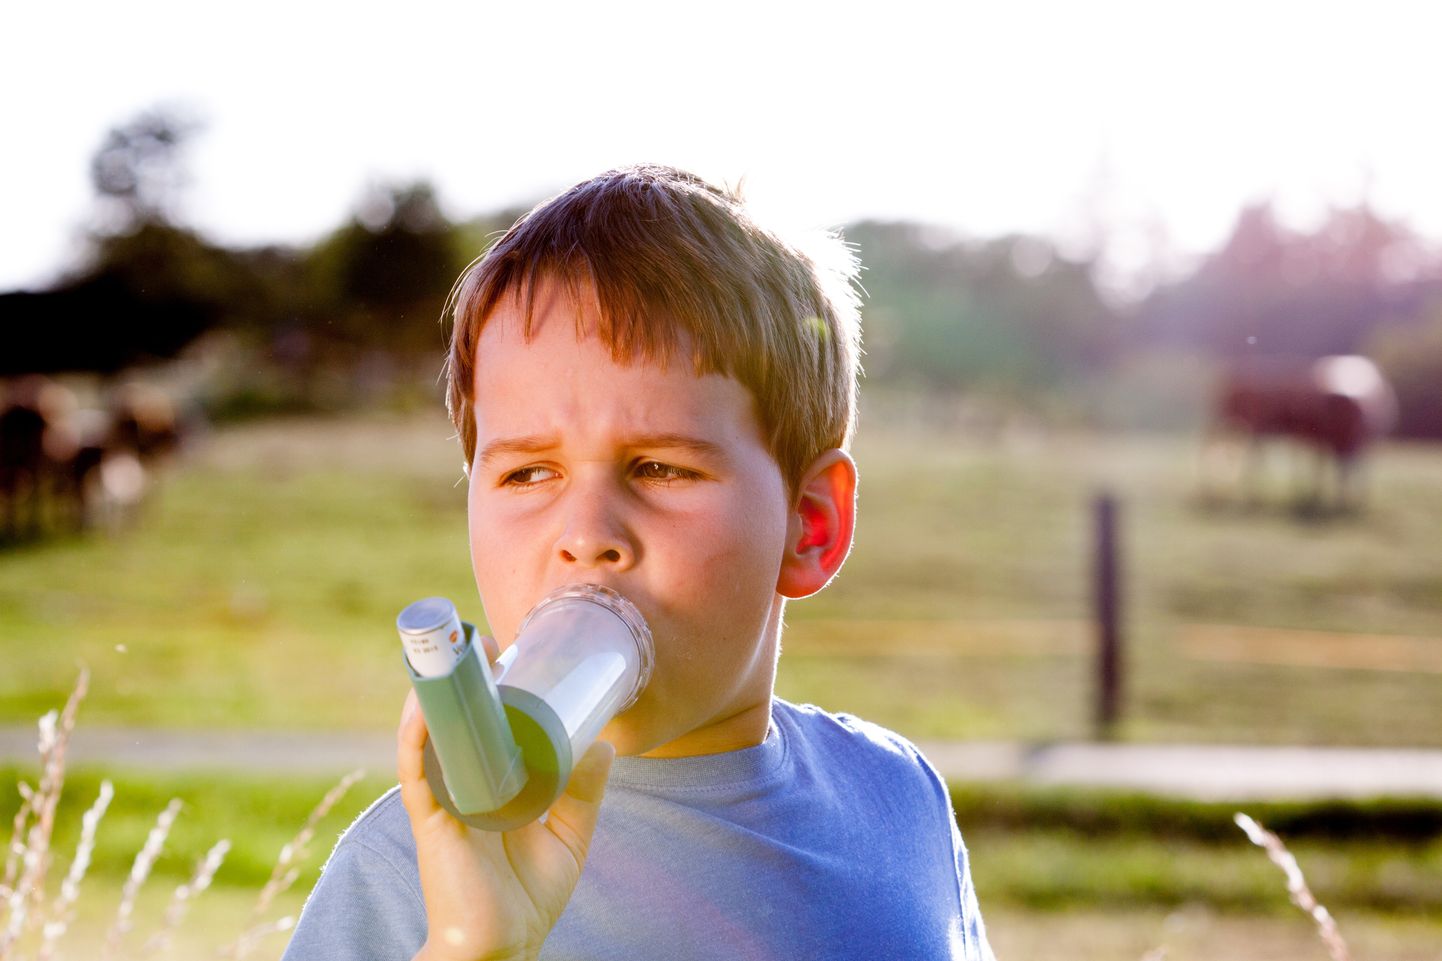 Uus avastus võib aidata avastada astmat juba enne, kui selle sümptomid on täielikult avaldunud.